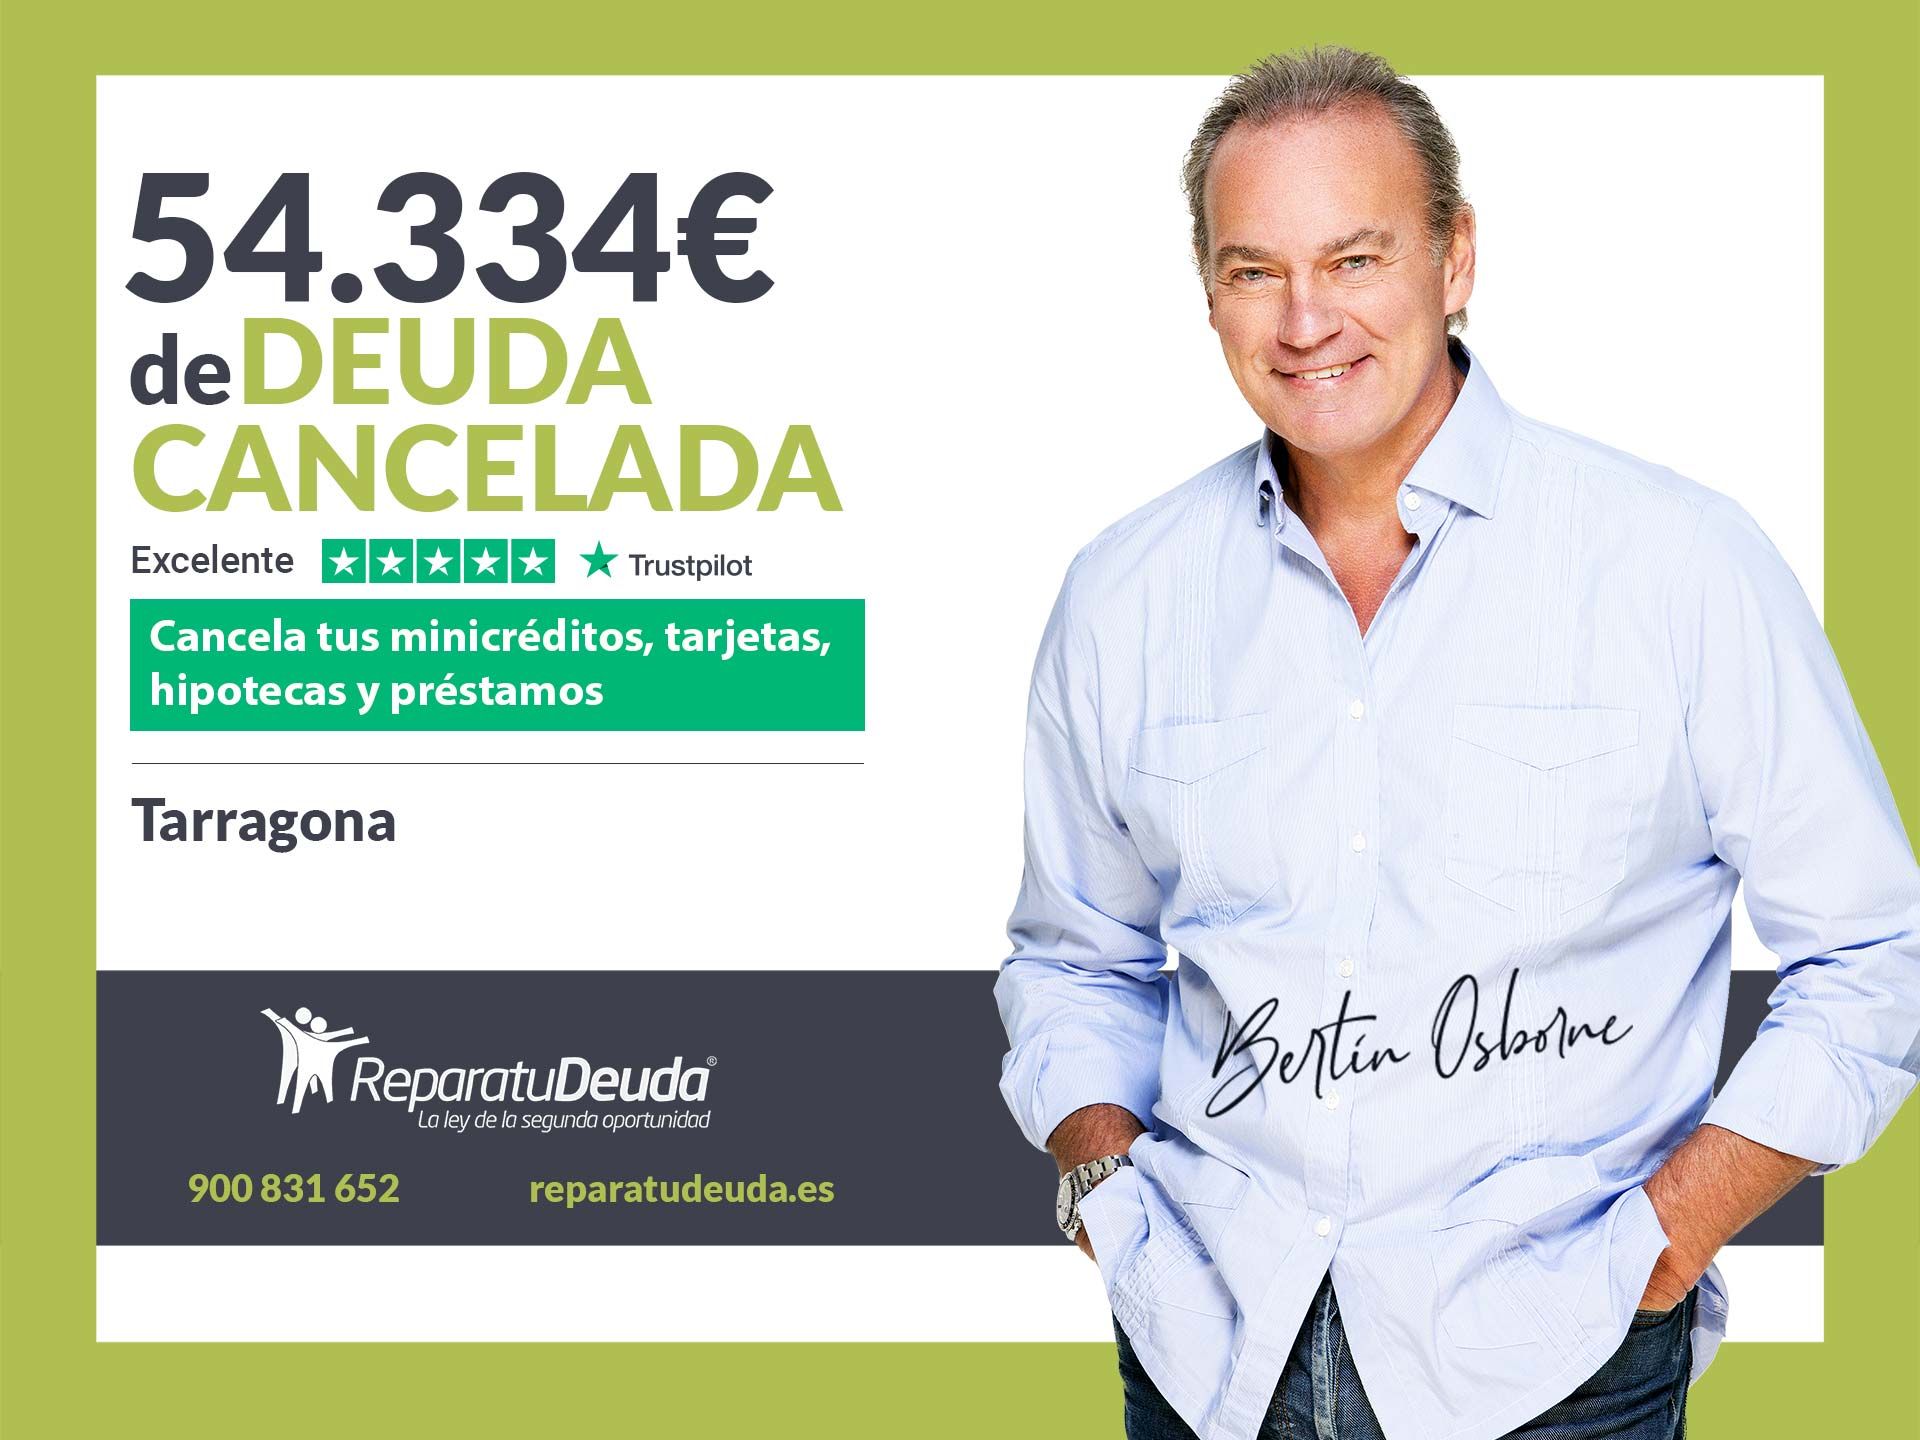 Repara tu Deuda Abogados cancela 54.334? en Tarragona (Catalunya) gracias a la Ley de Segunda Oportunidad